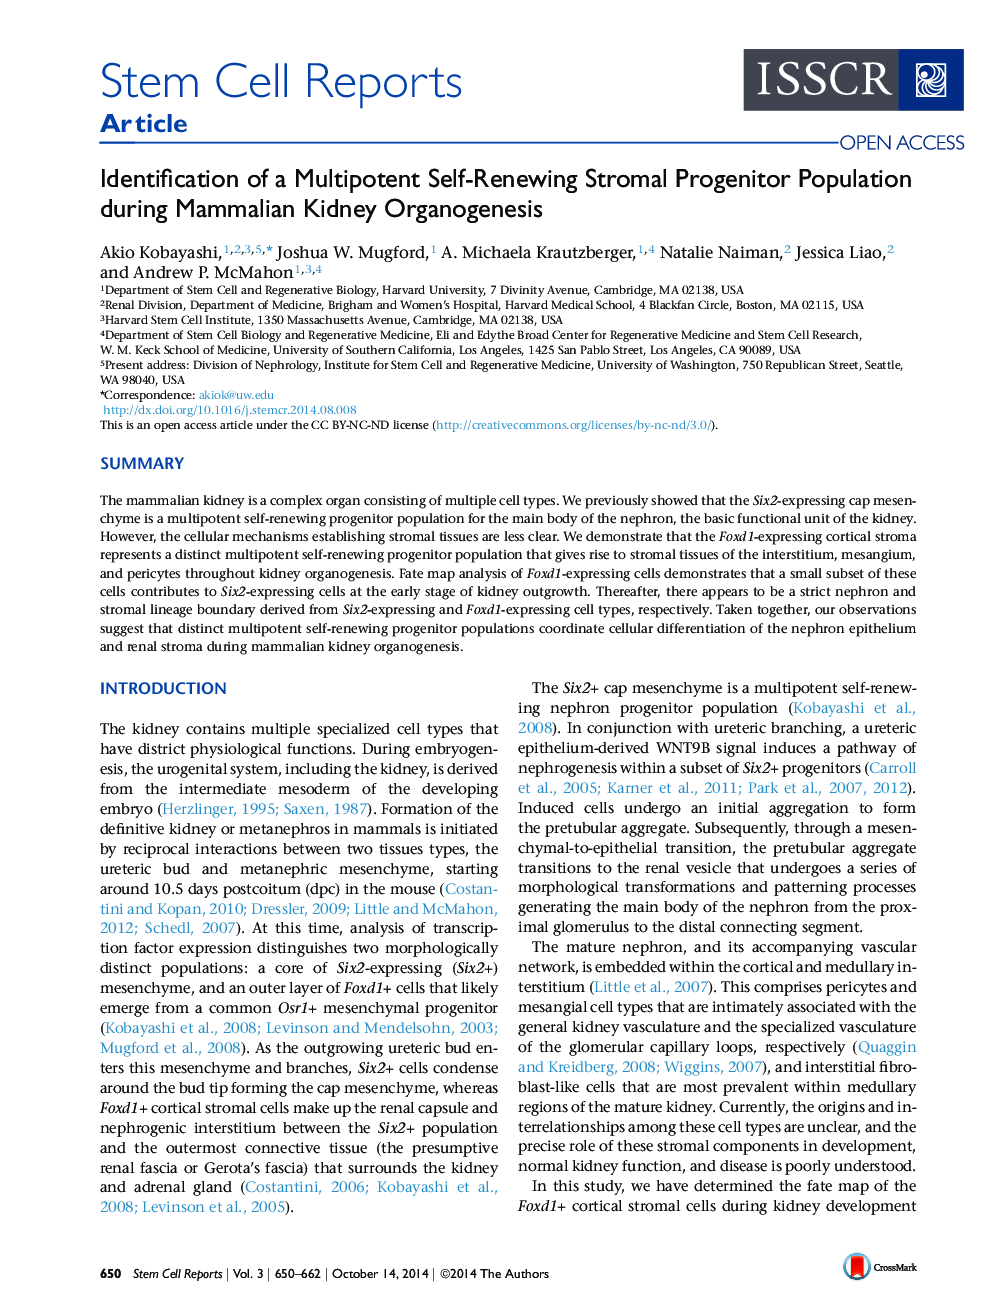 شناسایی جمعیت پیش ساز استرومائی چندپاشی خودآموزی در طی ارگانوژنز کلیه پستانداران 